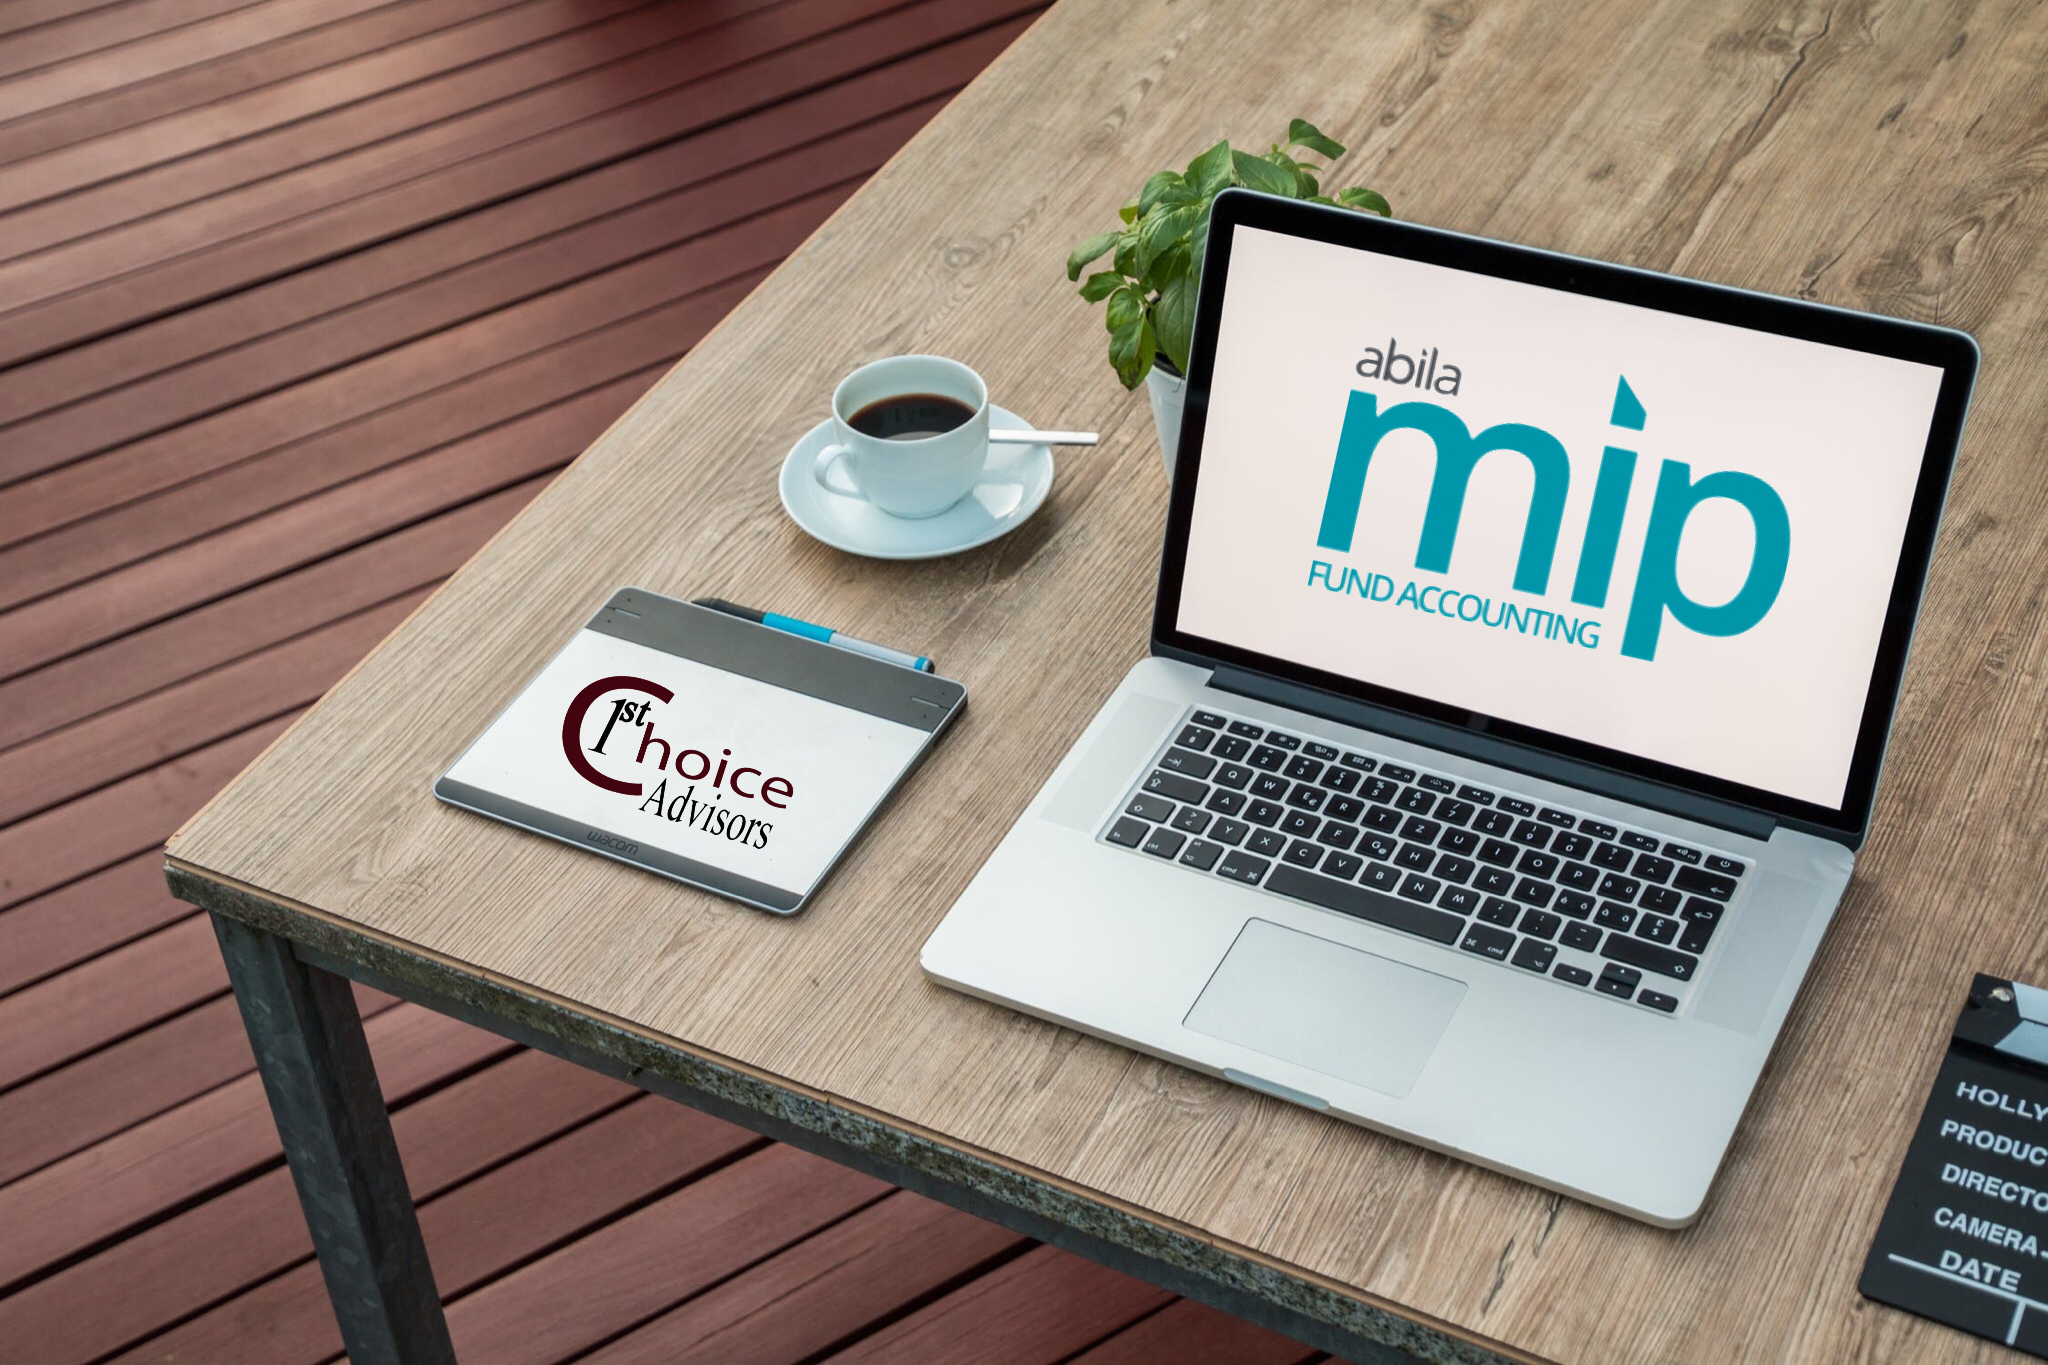 Abila MIP Fund Accounting